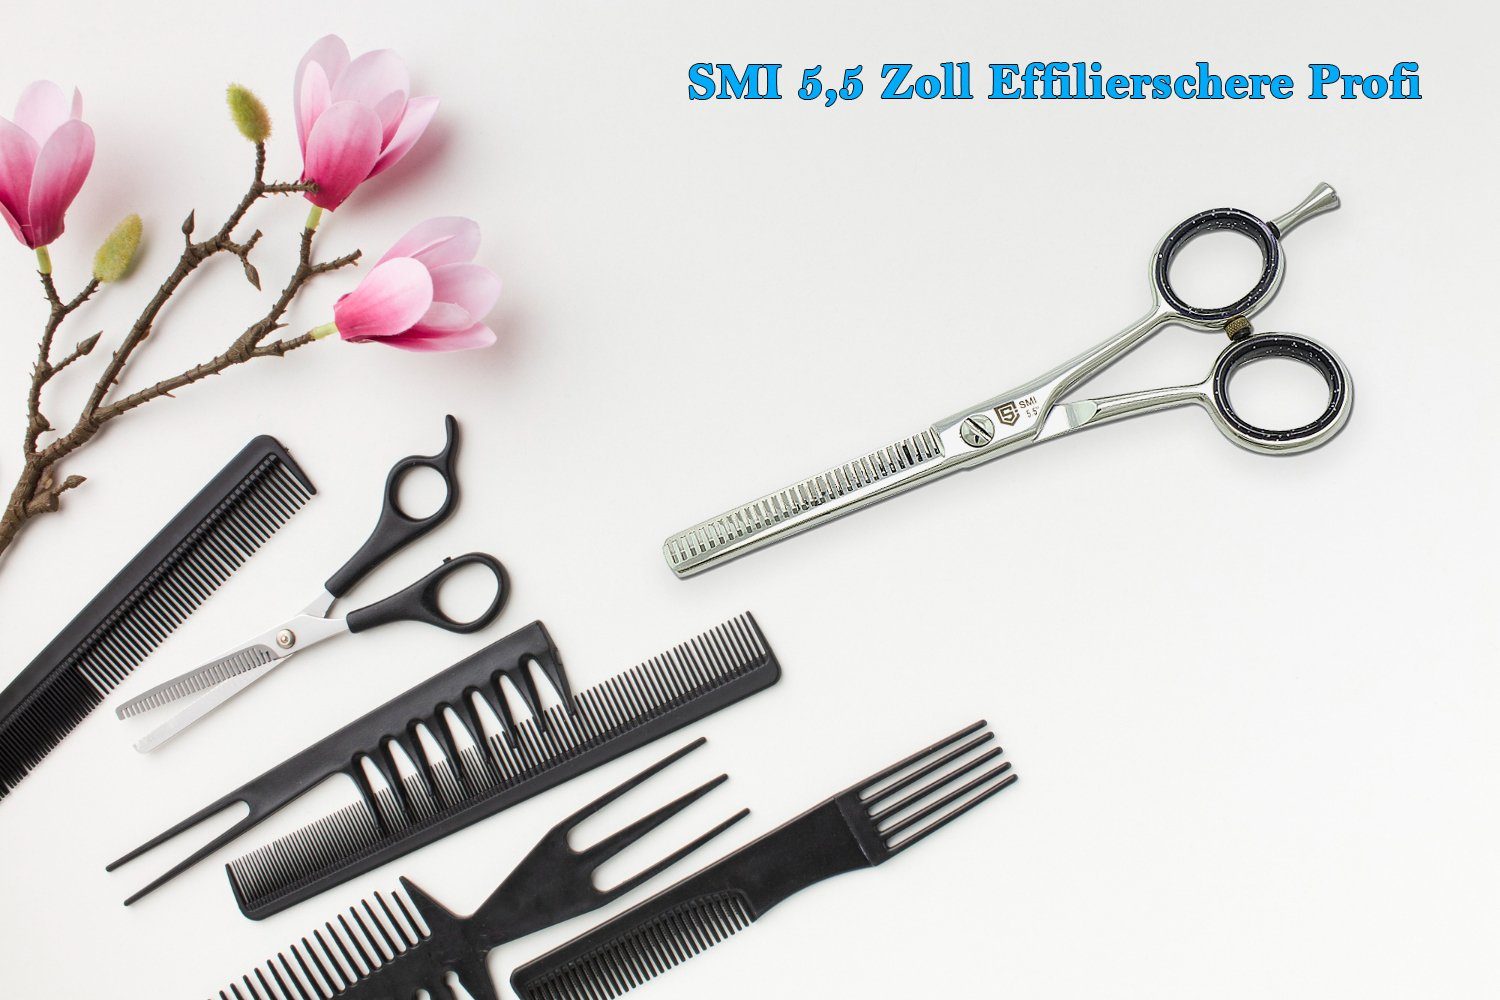 SMI Haarschere 5,5 zoll Effilierschere Ausdünnschere Friseurscheren Haarschere